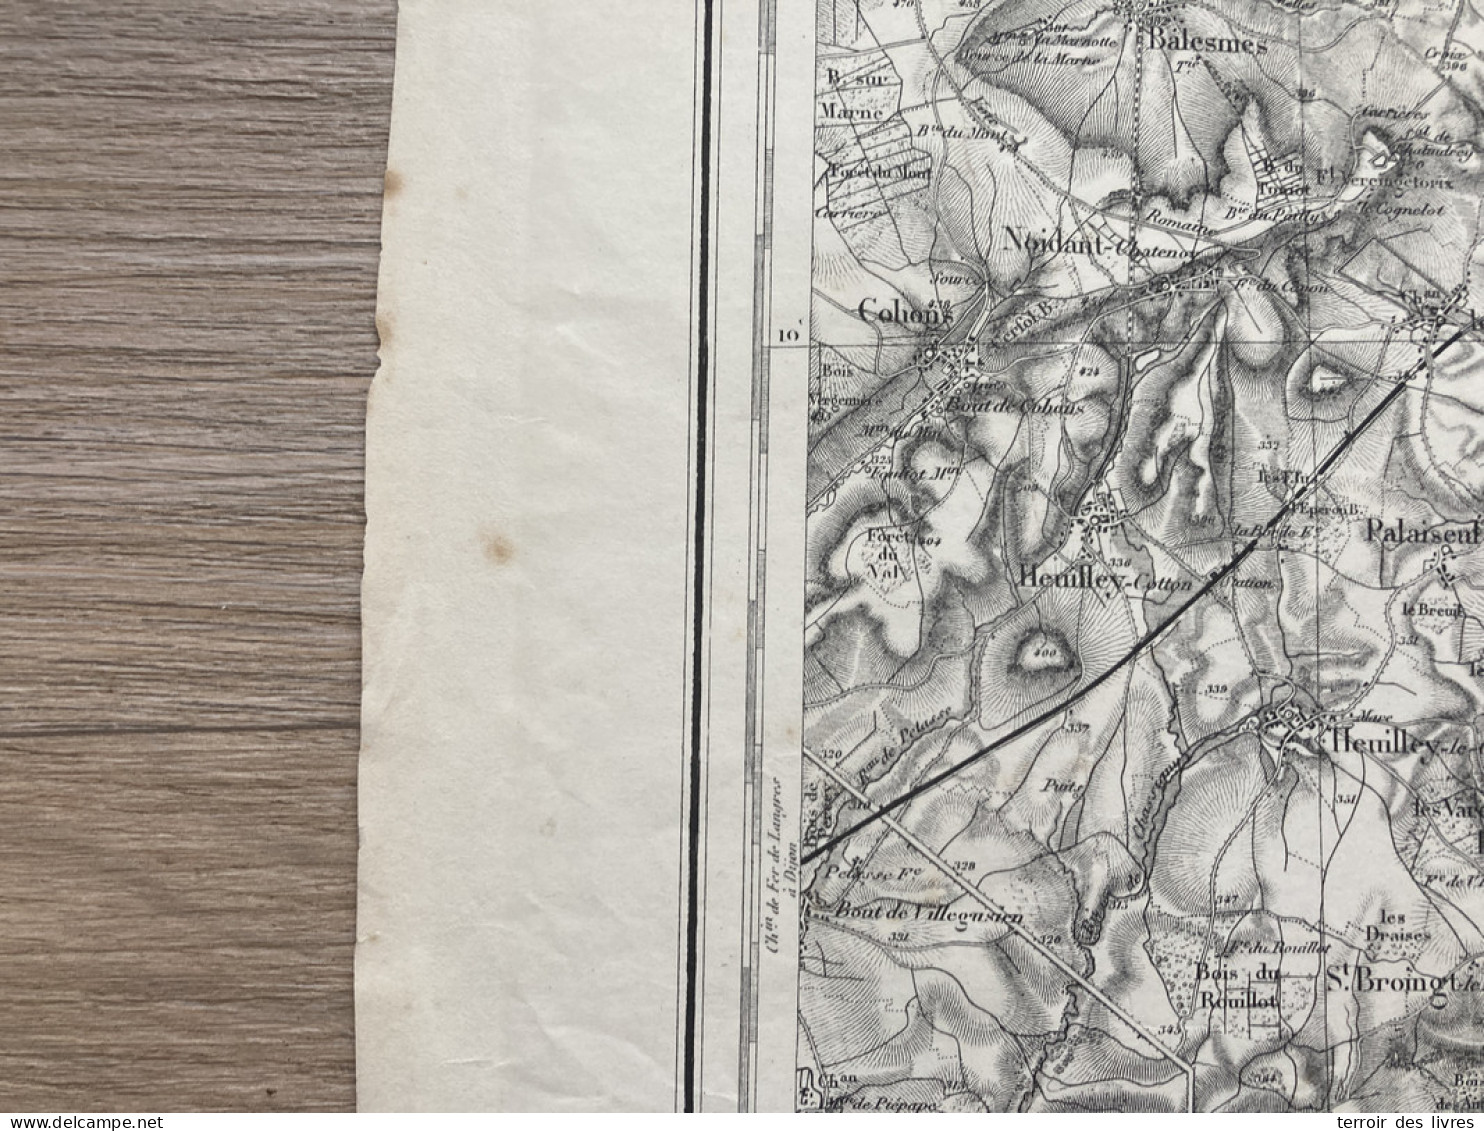 Carte état Major LANGRES S.O. 1845 1897 35x54cm BUSSIERES LES BELMONT CHAMPSEVRAINE POINSON-LES-FAYL GENEVRIERES SAULLES - Geographical Maps